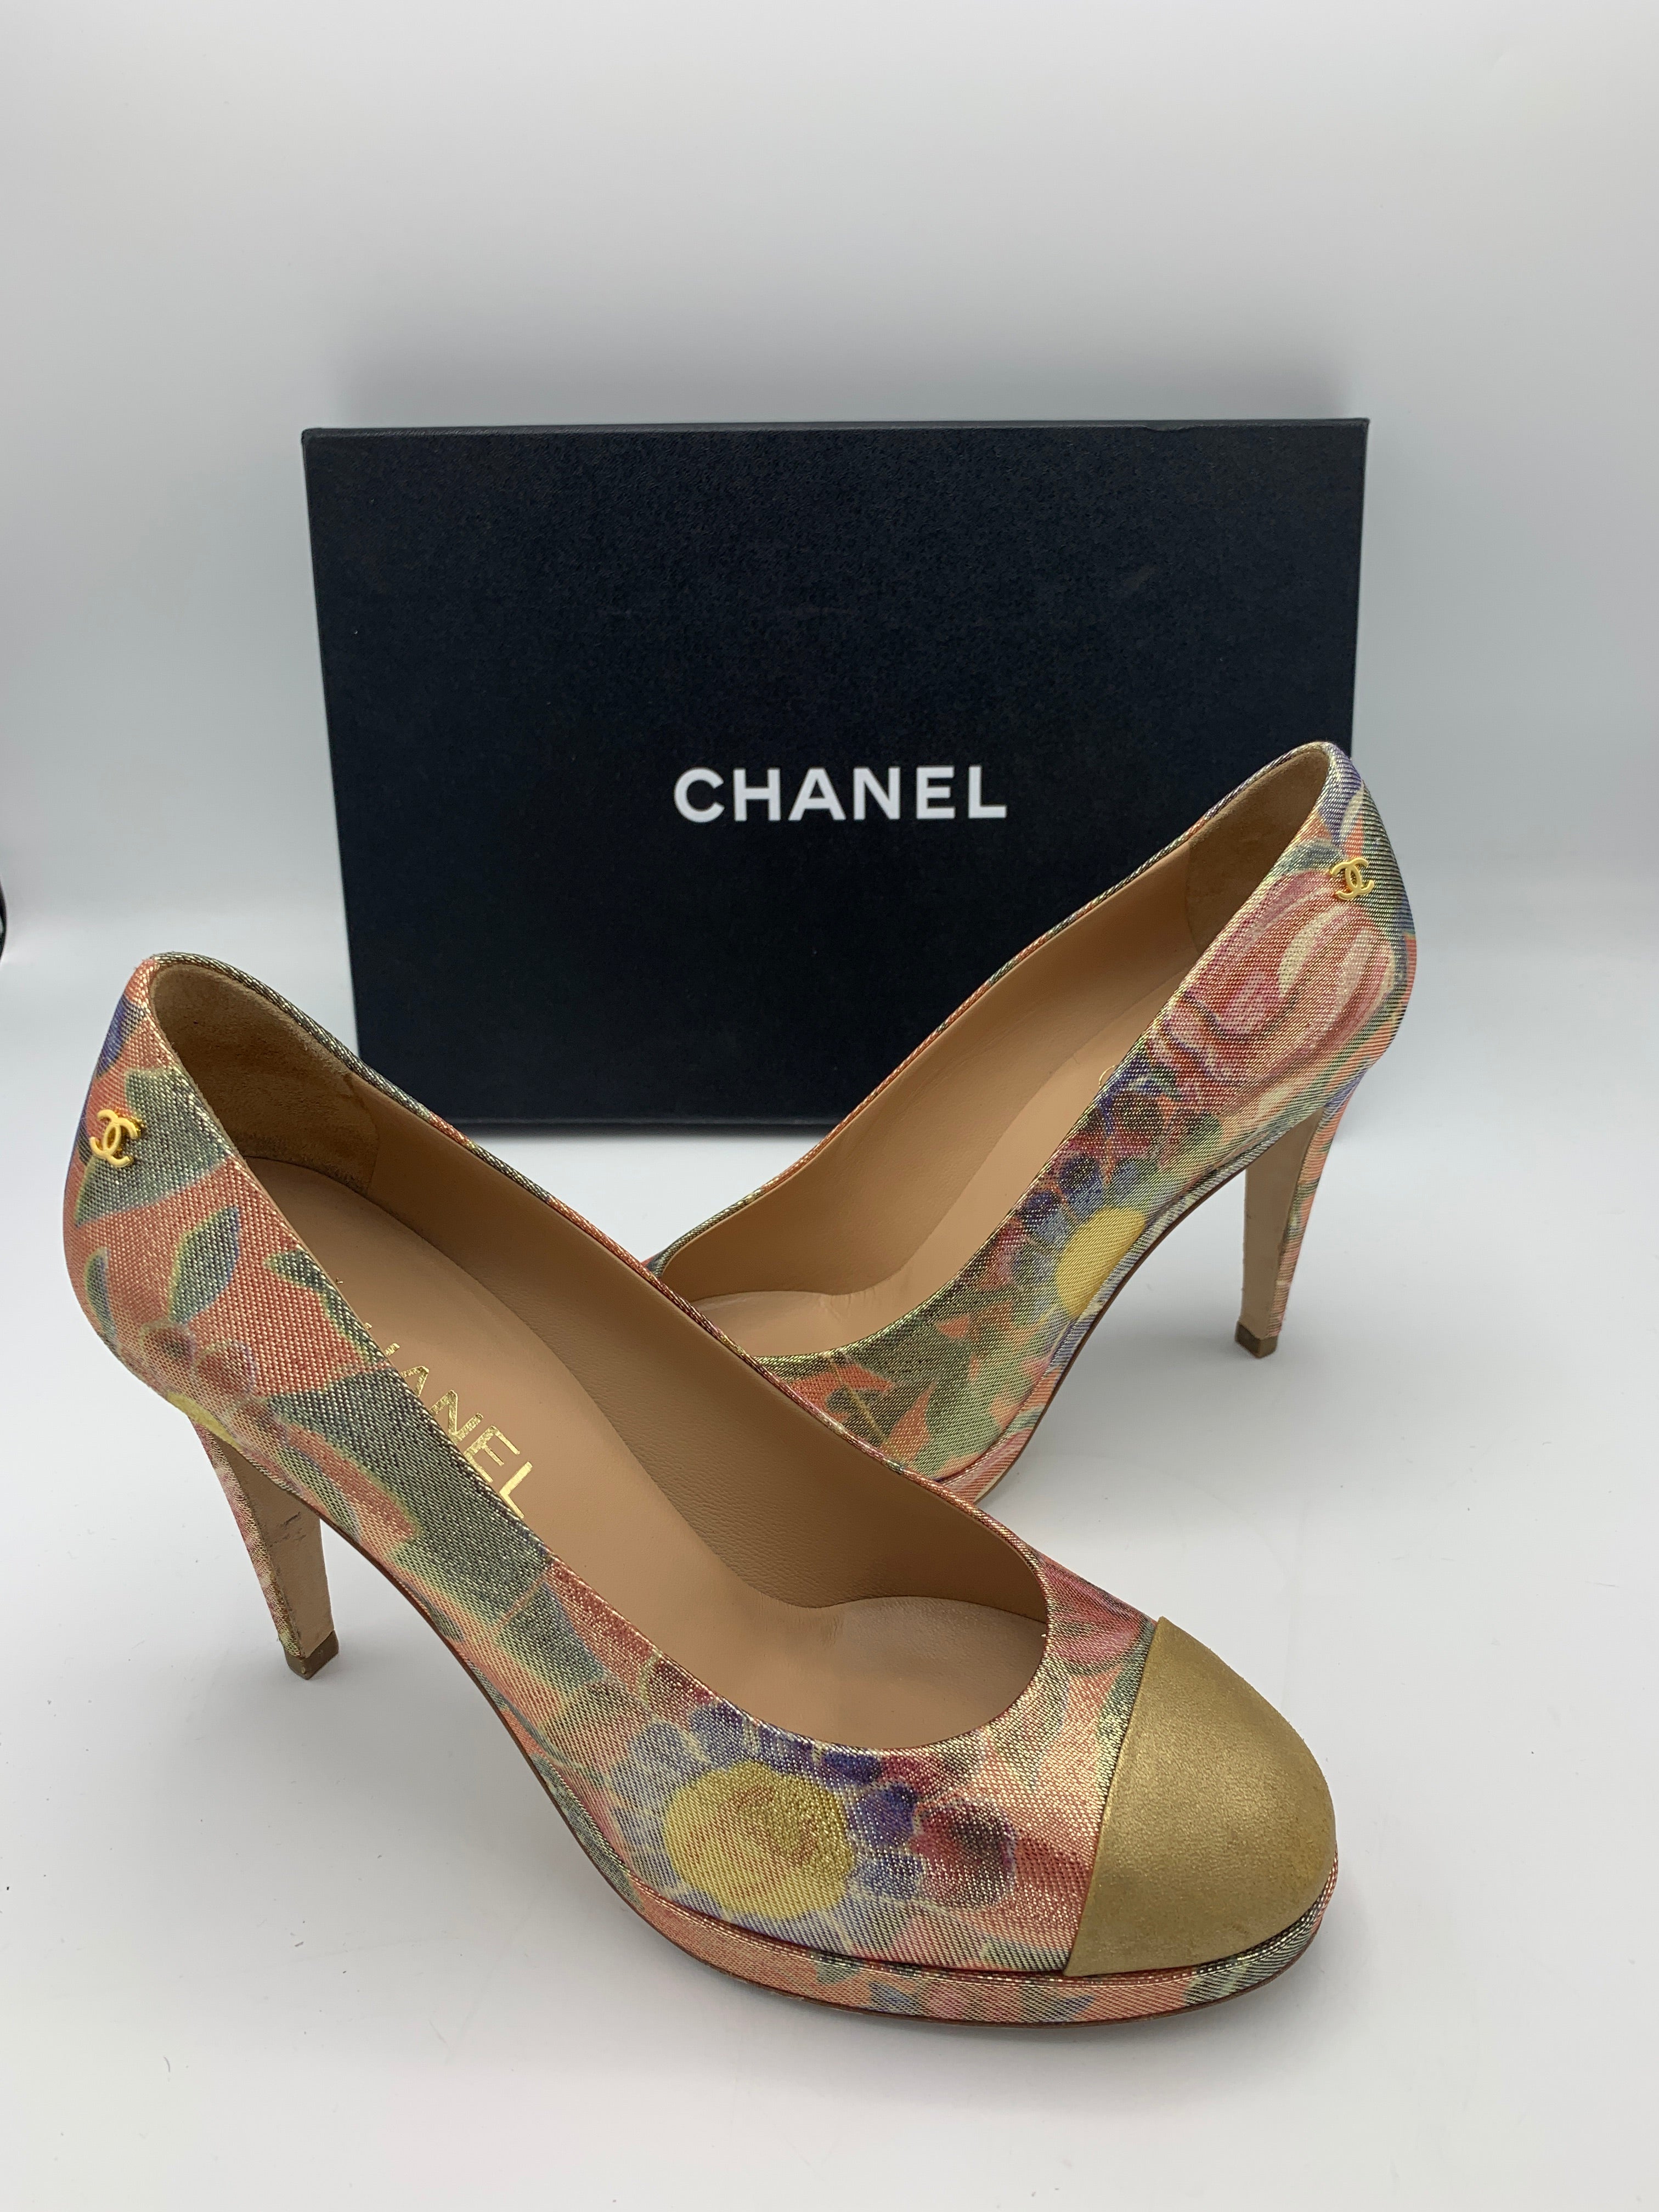 Chanel Paris Dubai heels